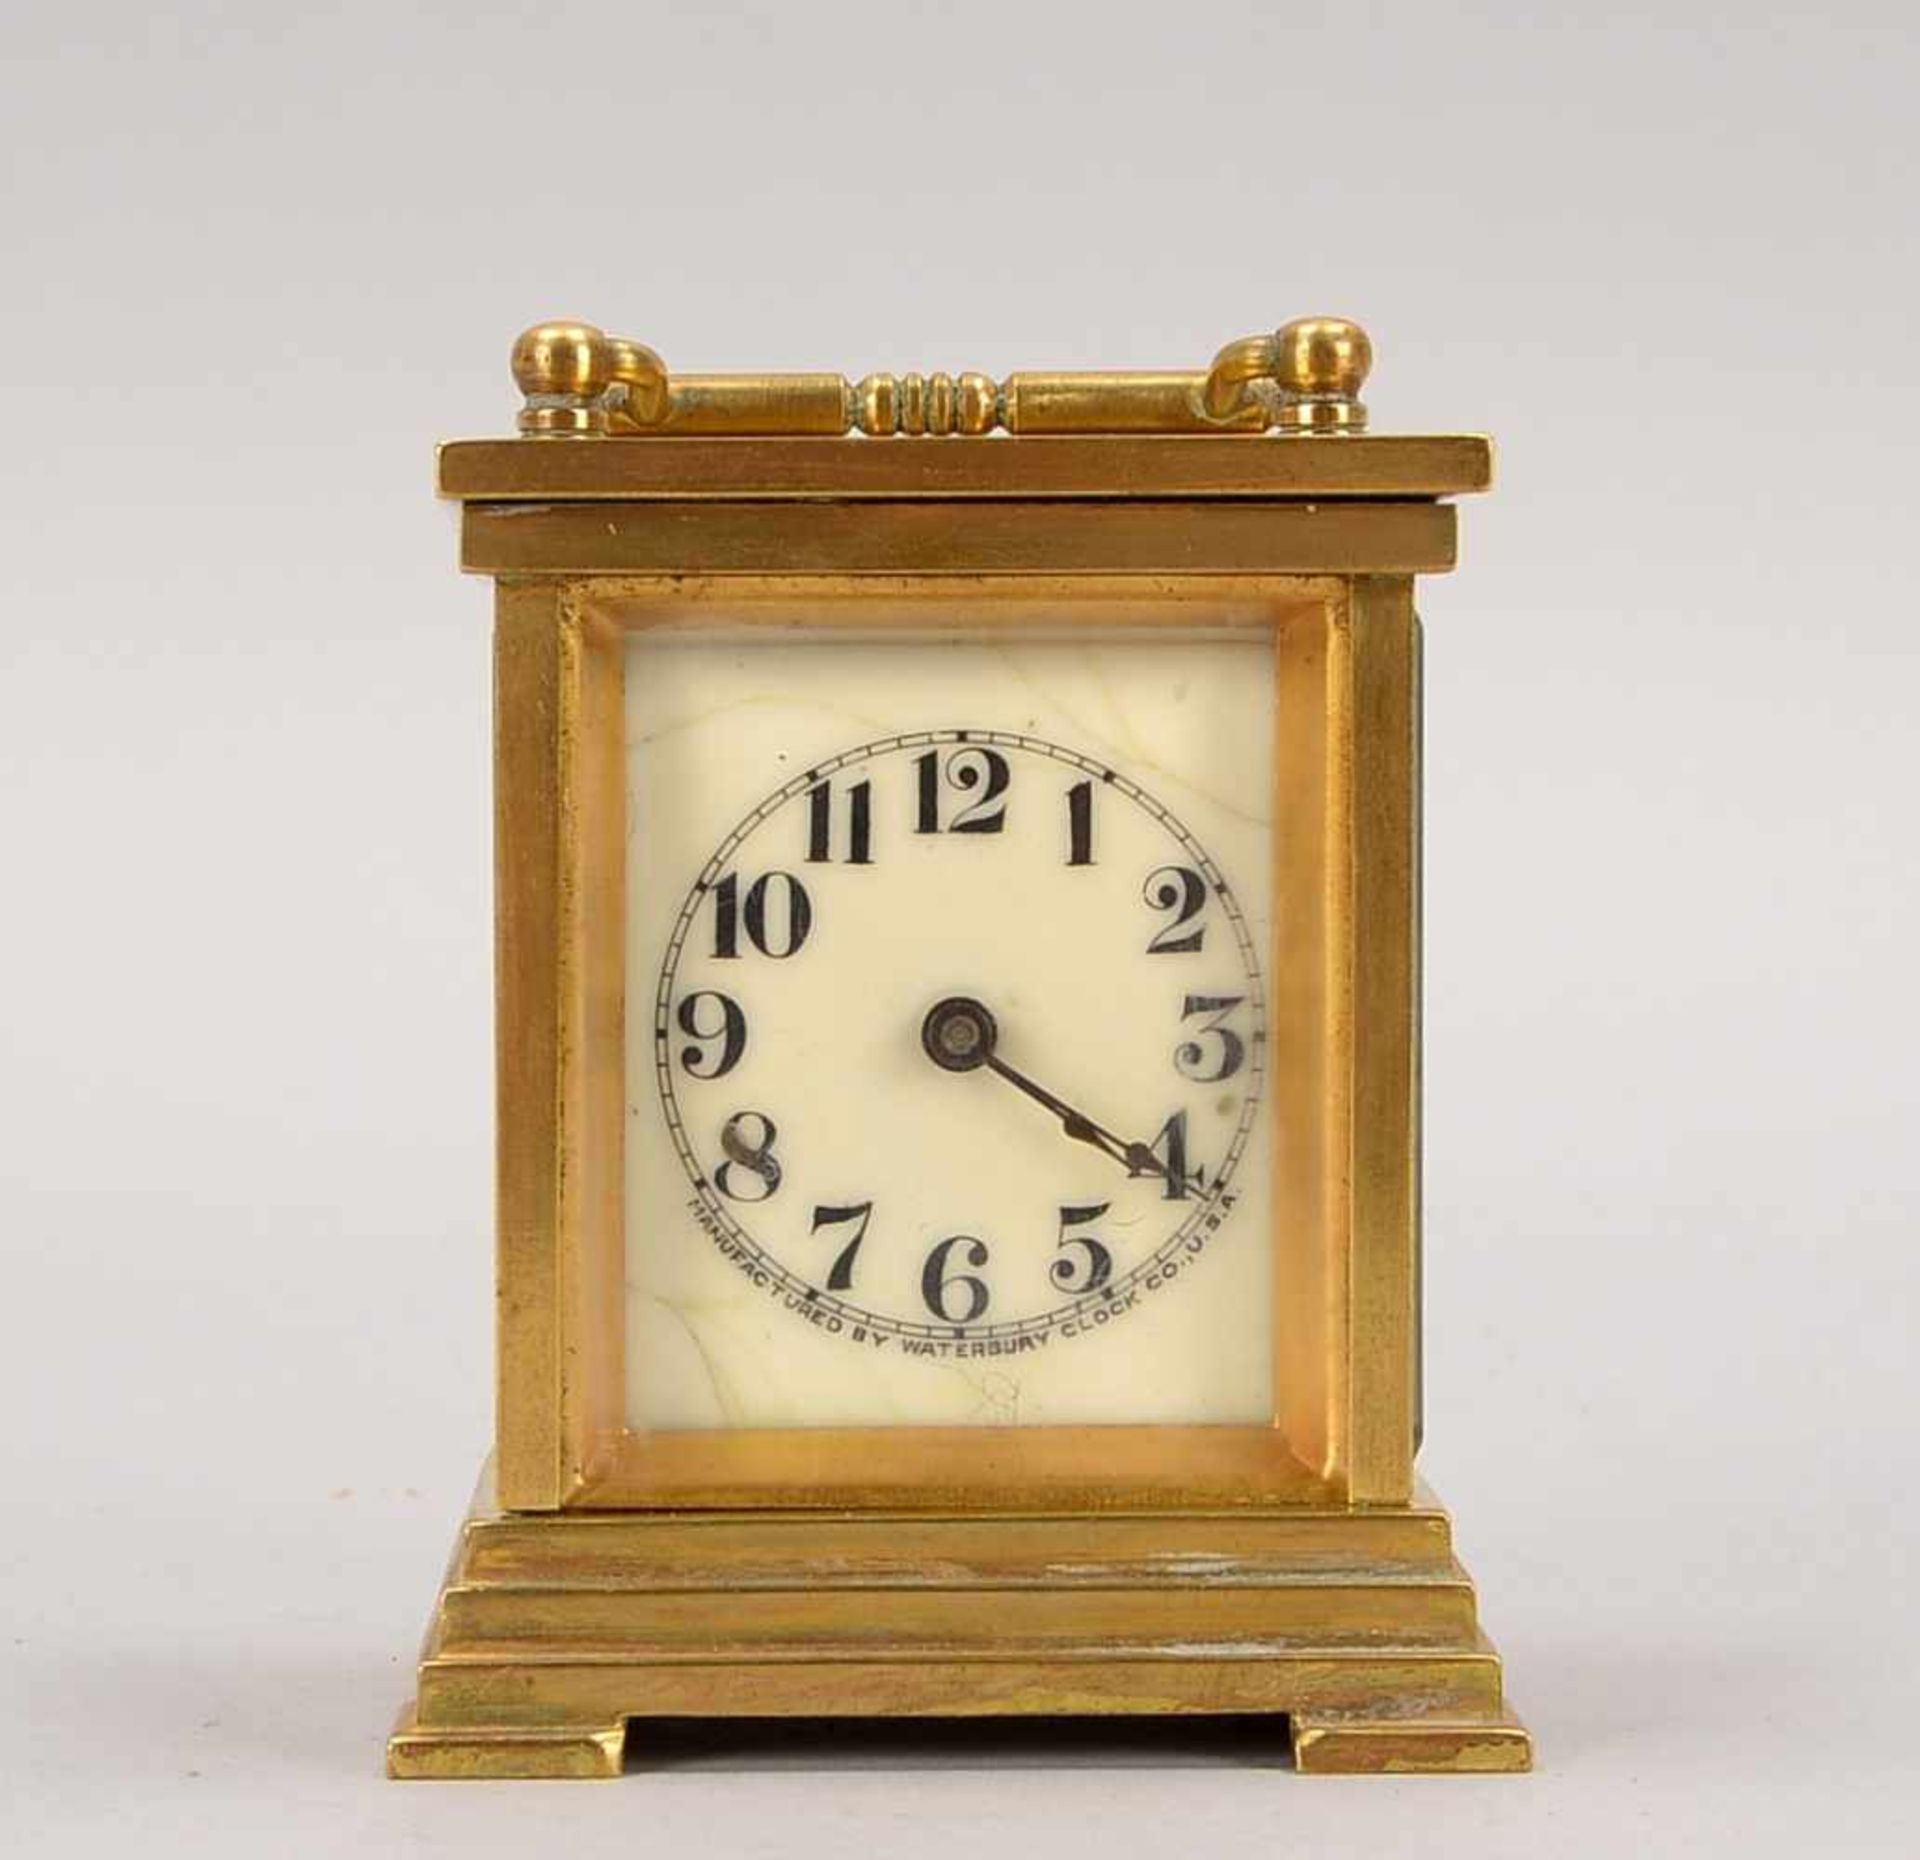 Tischuhr, 'Waterbury Clock Co.', USA, Messing-Gehäuse 2-seitig verglast/Glas mit Facettenschliff, - Bild 2 aus 3